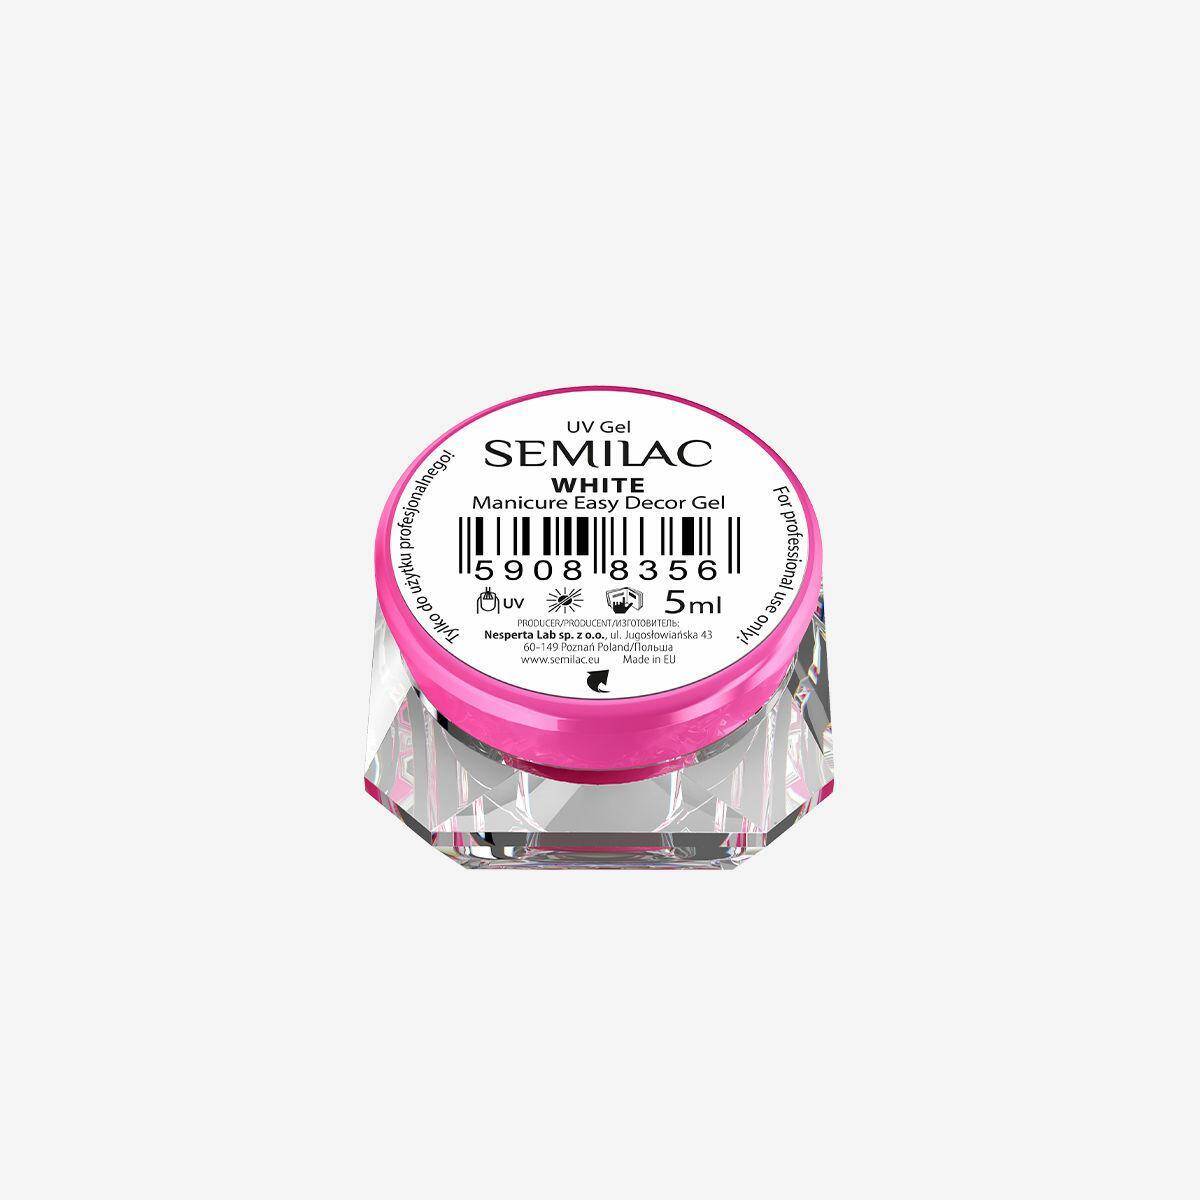 Semilac Manicure Easy Decor Gel White 5ml (Zdjęcie 1)